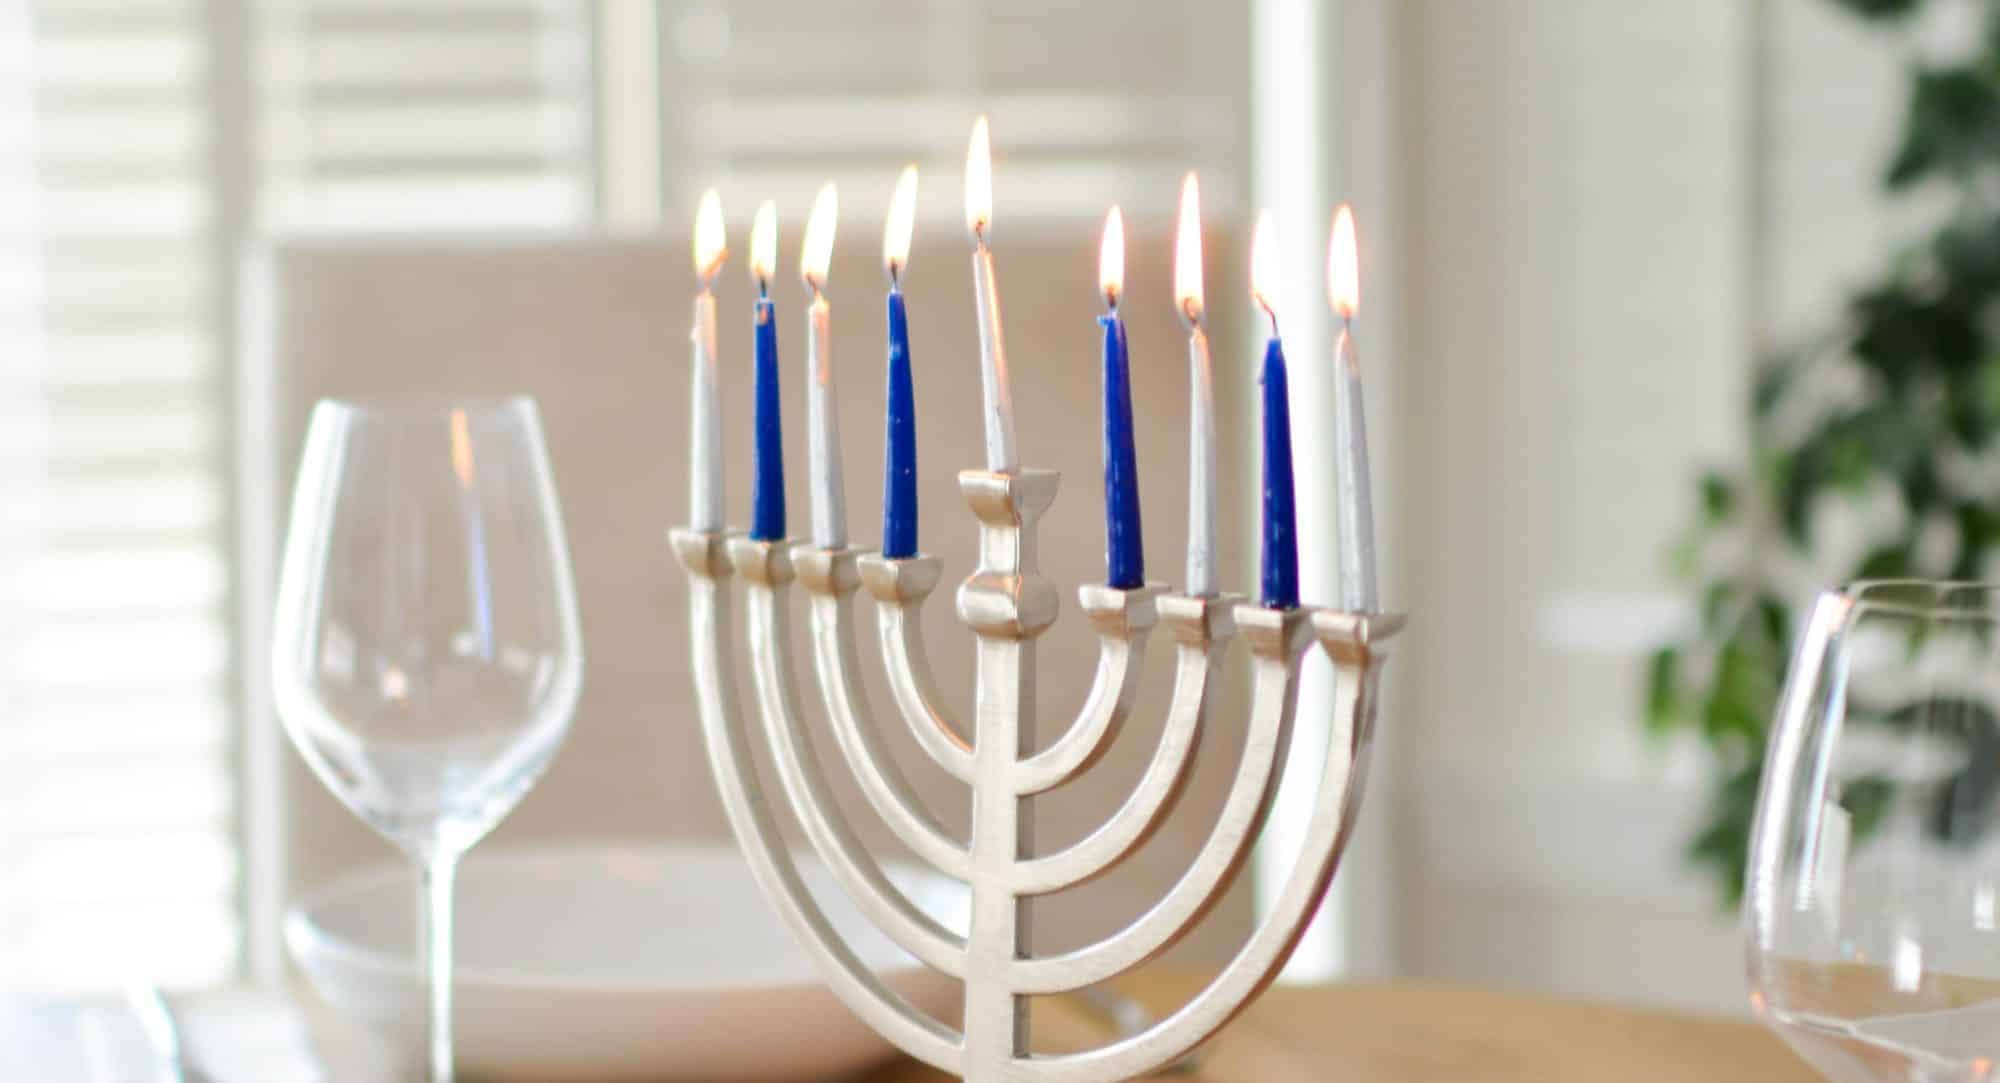 menorah lit for hanukkah celebration